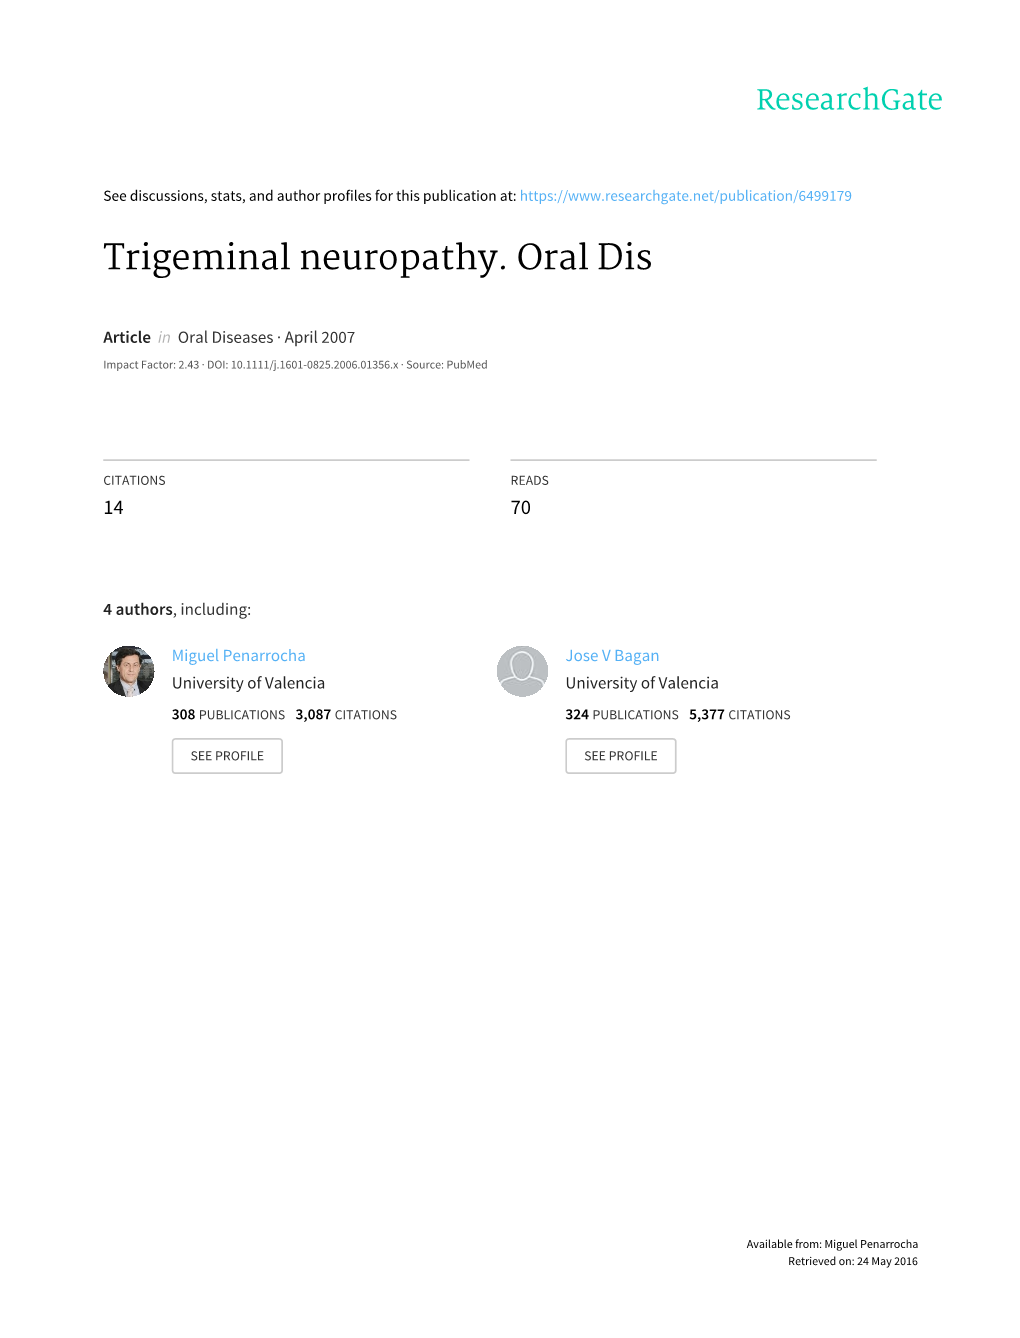 Trigeminal Neuropathy. Oral Dis